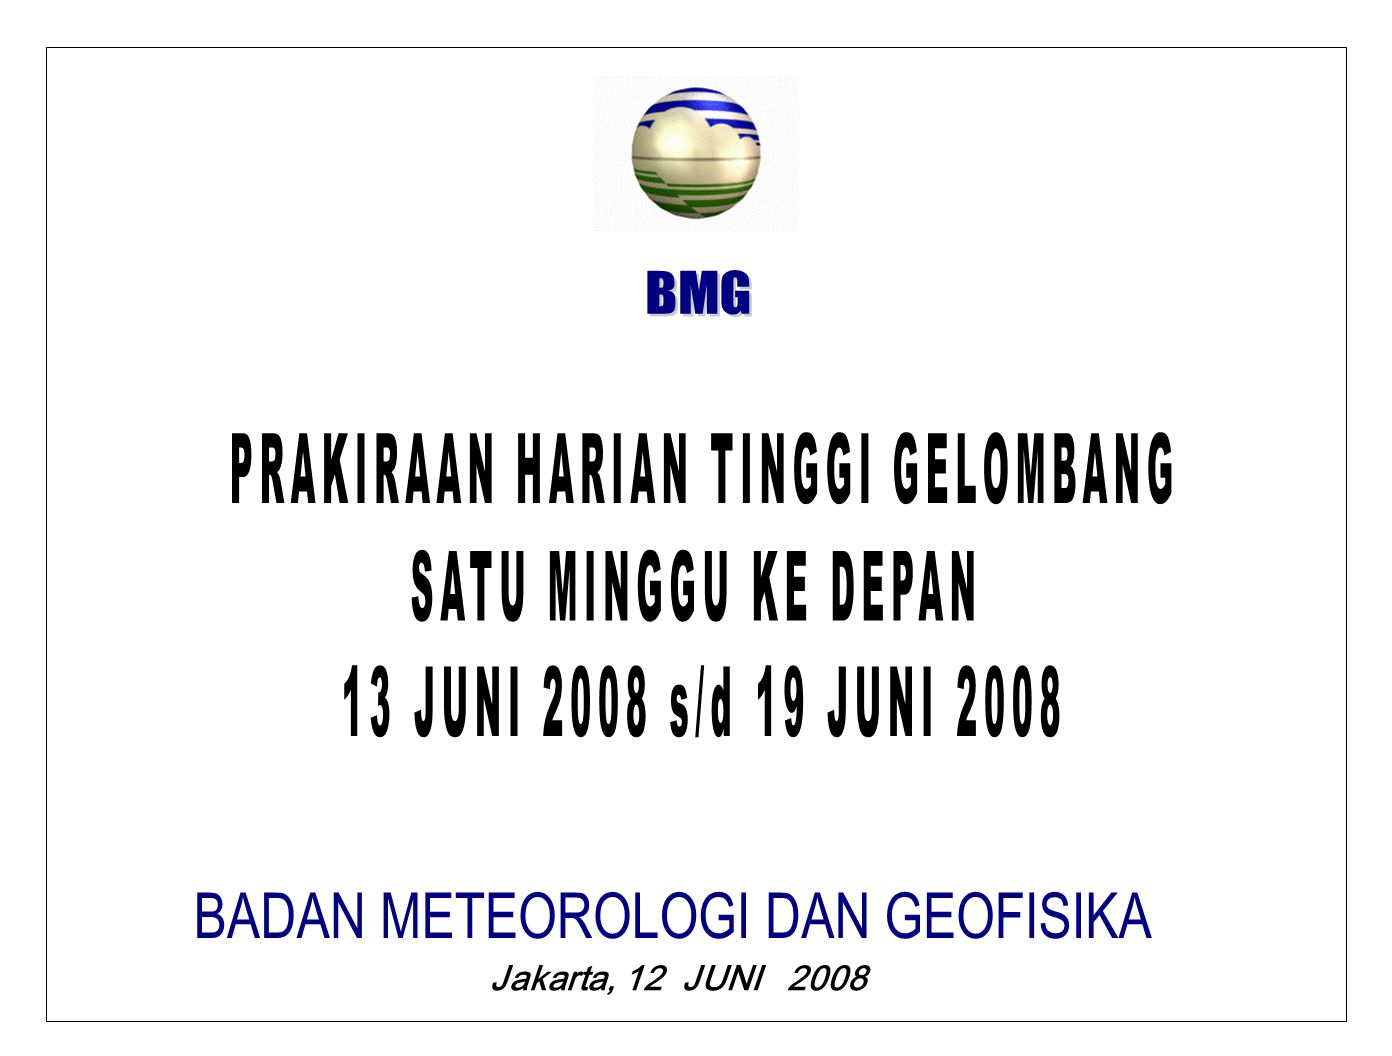 Jakarta, 12 JUNI 2008